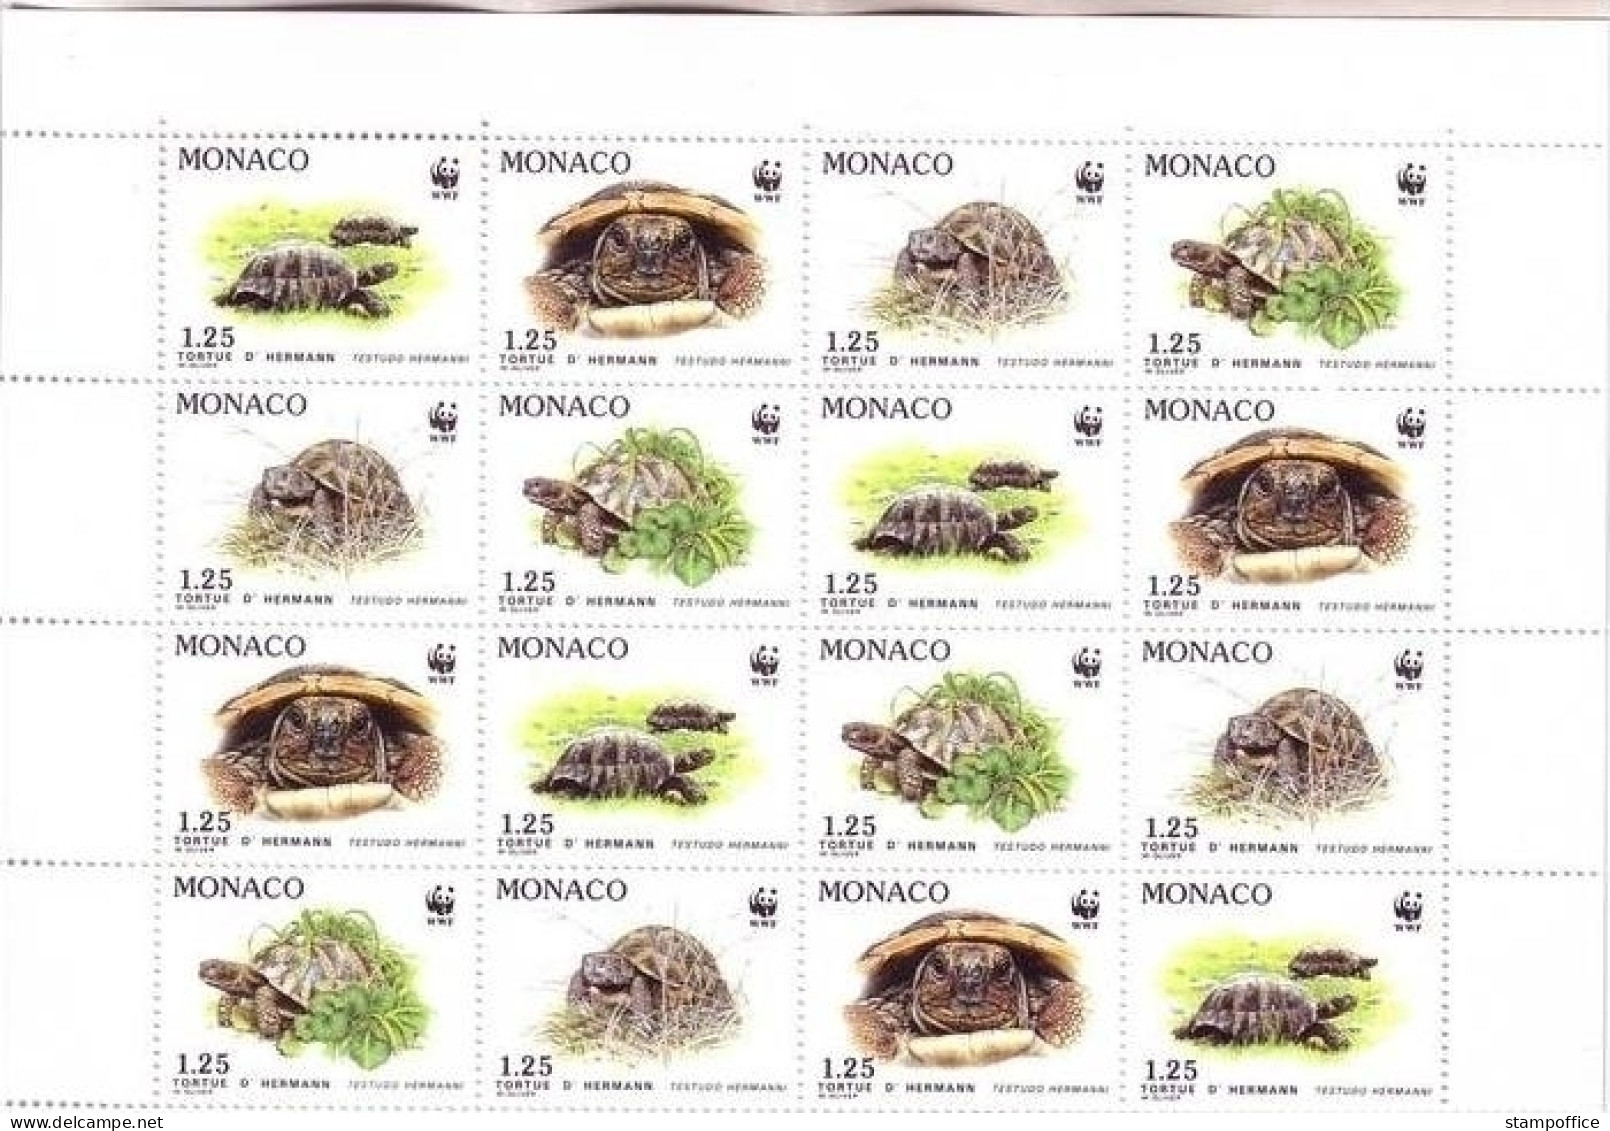 MONACO 2046-2049 POSTFRISCH(MINT) Kleinbogen - GRIECHISCHE LANDSCHILDKRÖTE WWF - Schildkröten